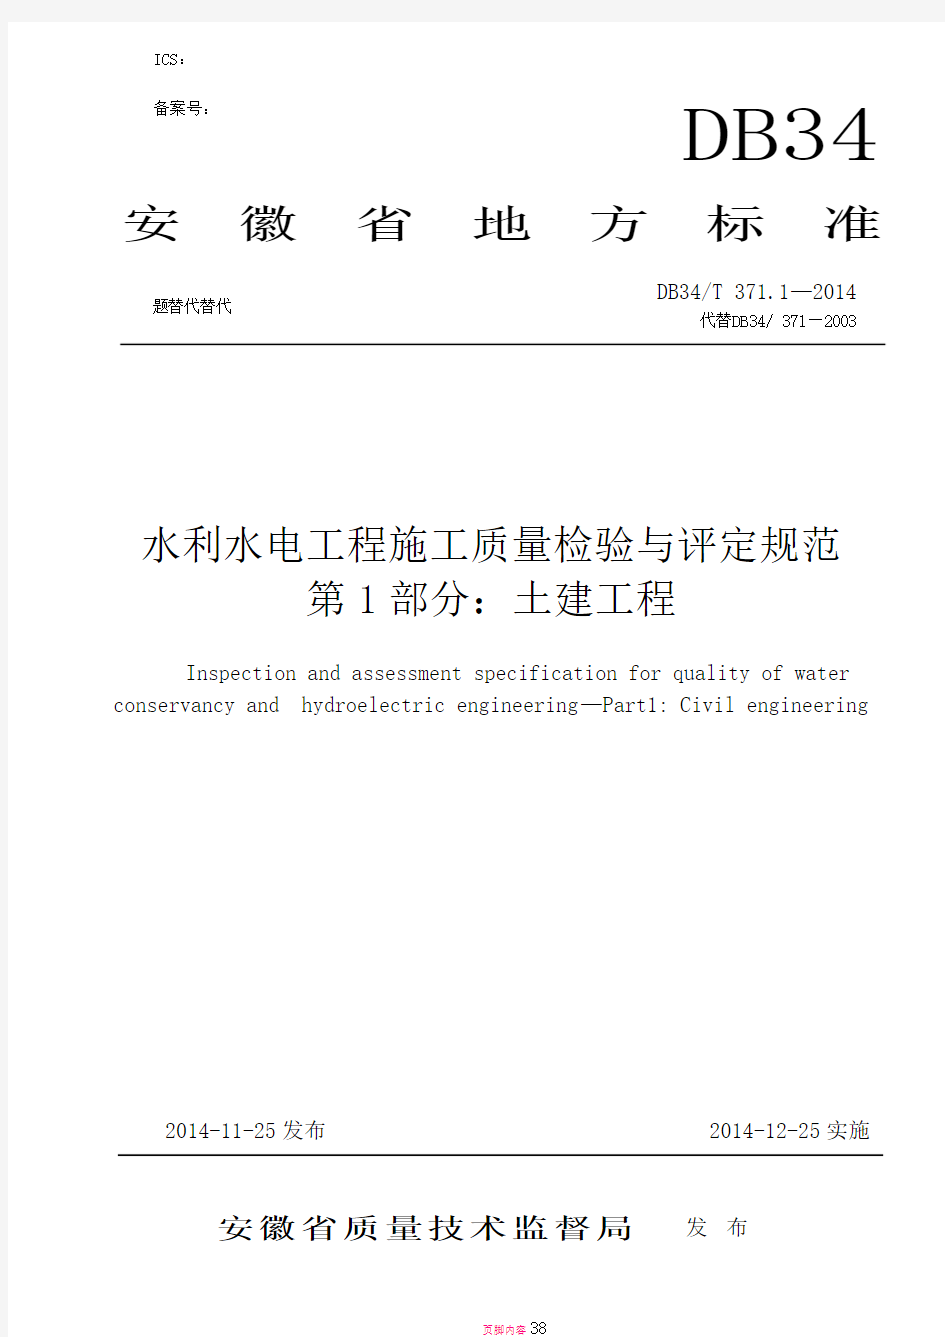 安徽省地方标准DB34-T-371.1-2014水利水电工程施工质量检验与评定规范